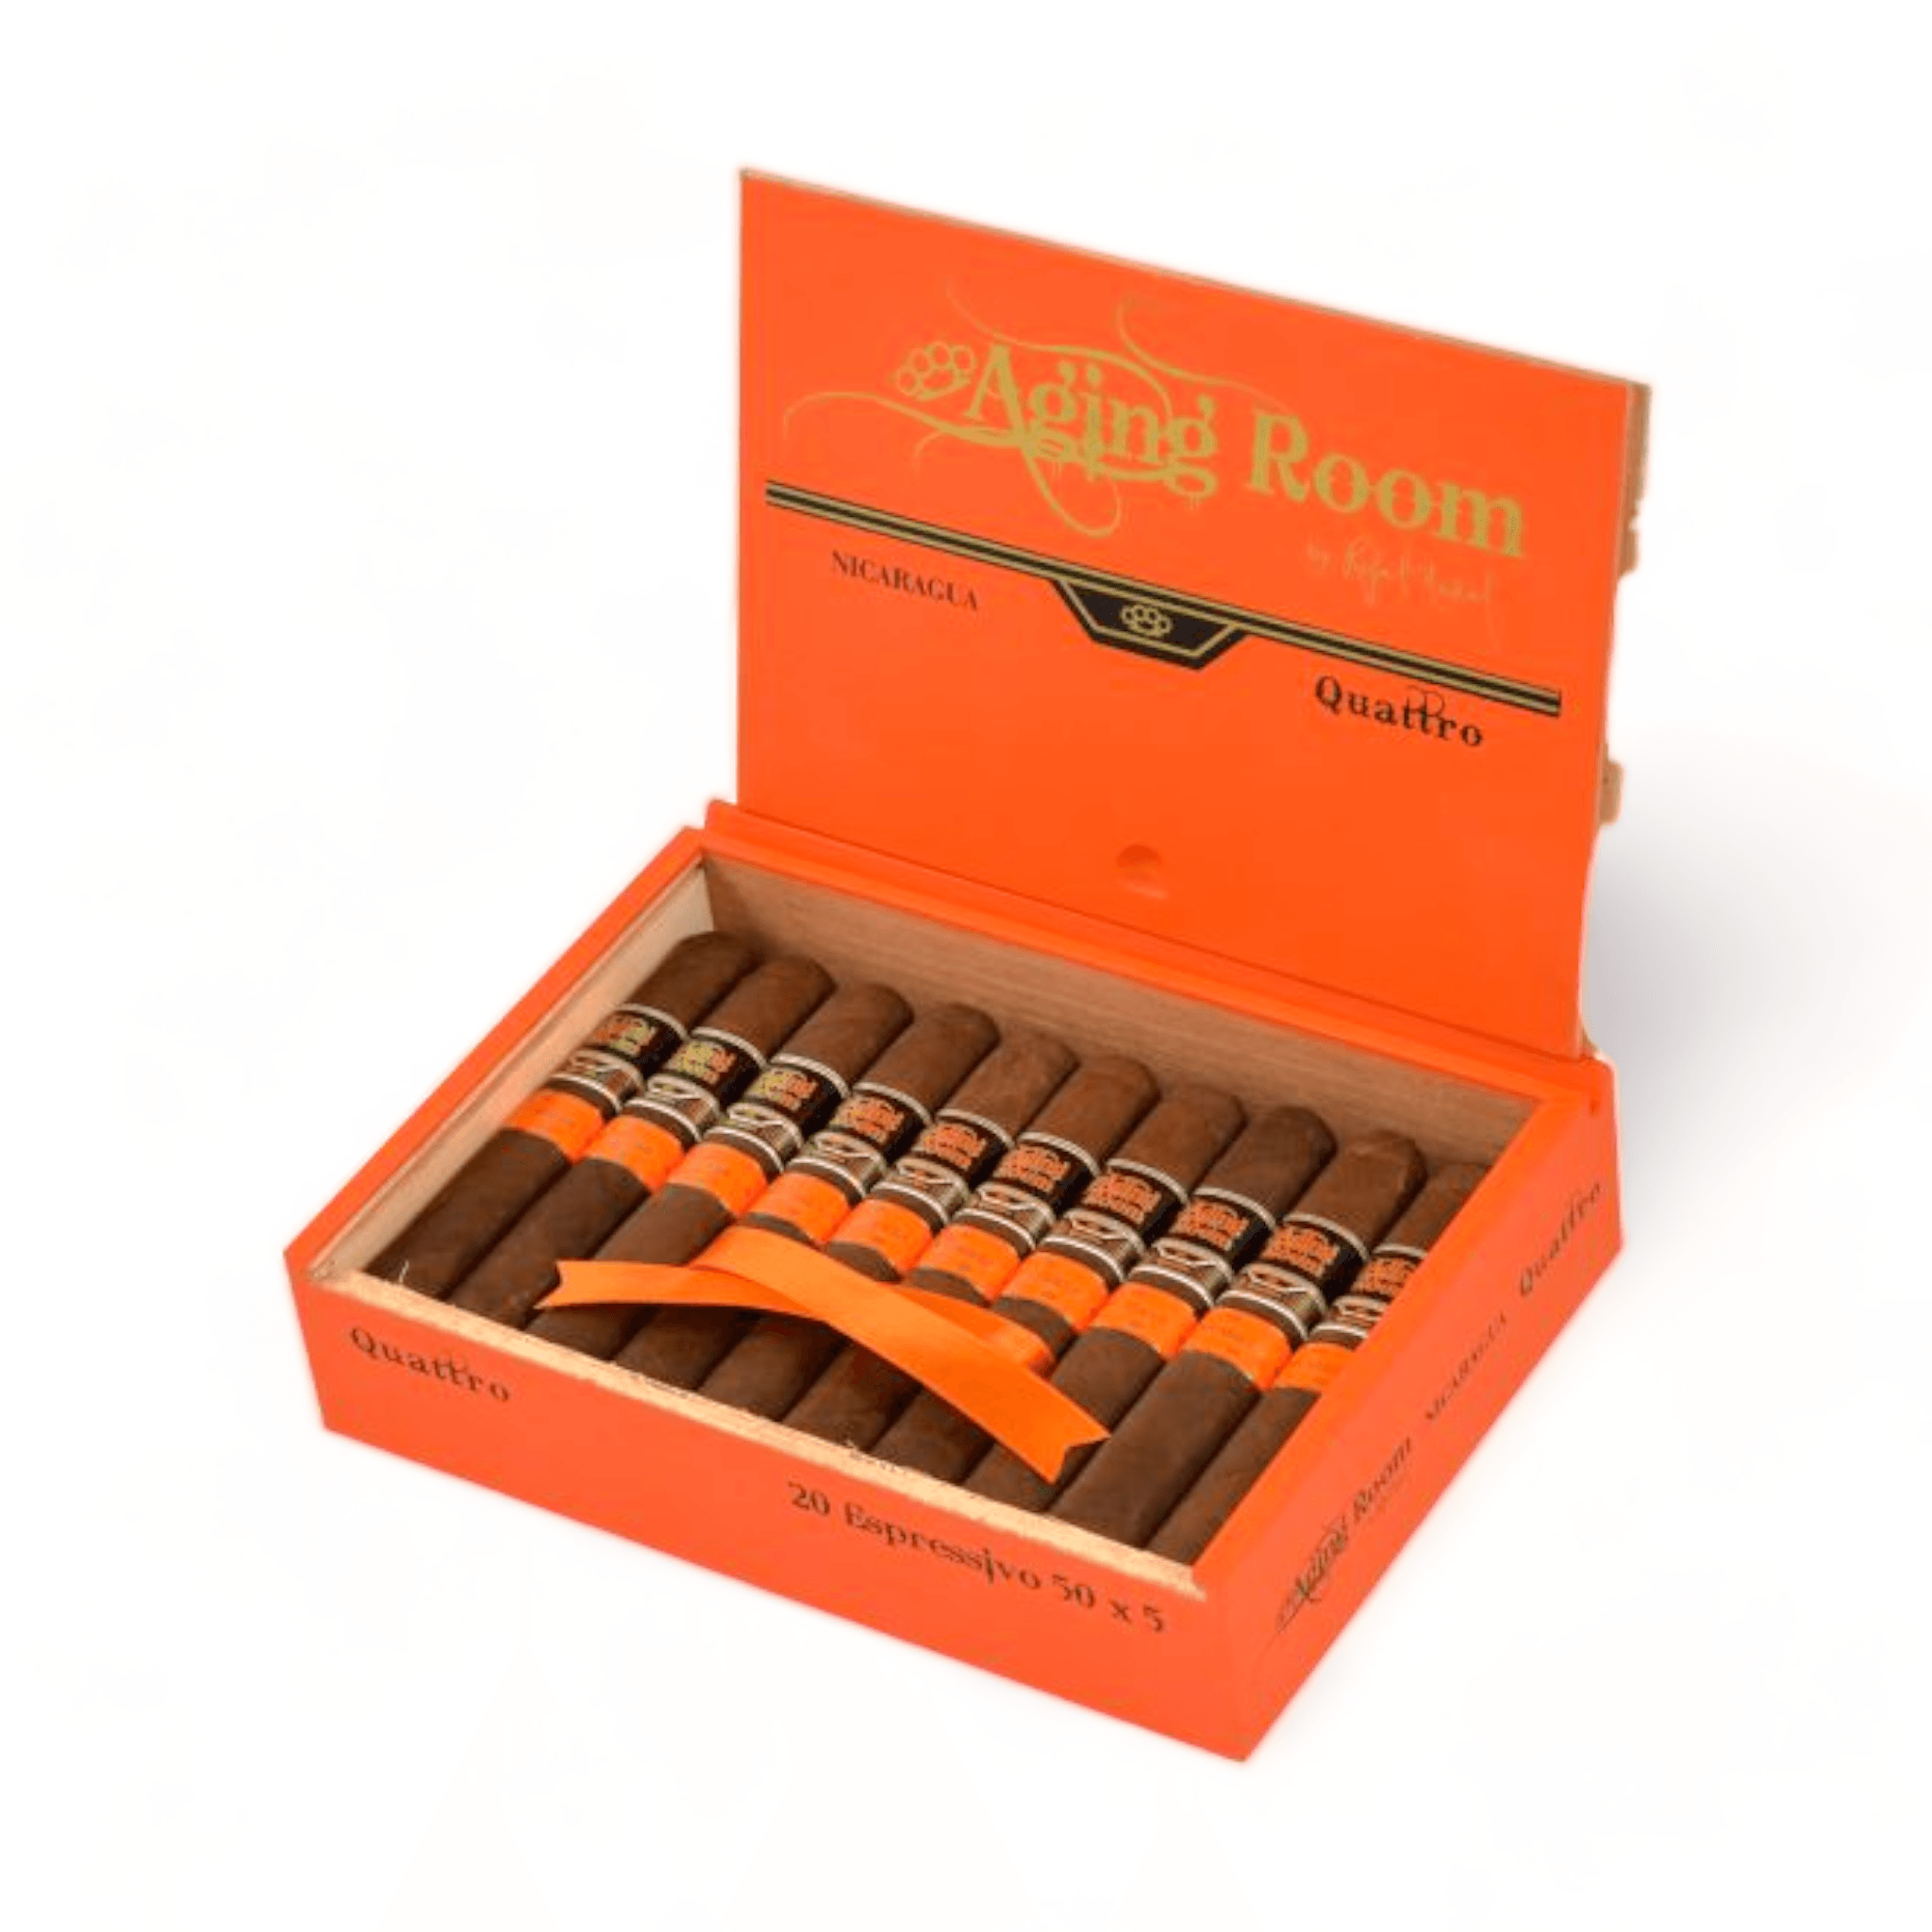 Aging Room Cigars | Quattro Espressivo | Box of 20 - hk.cohcigars